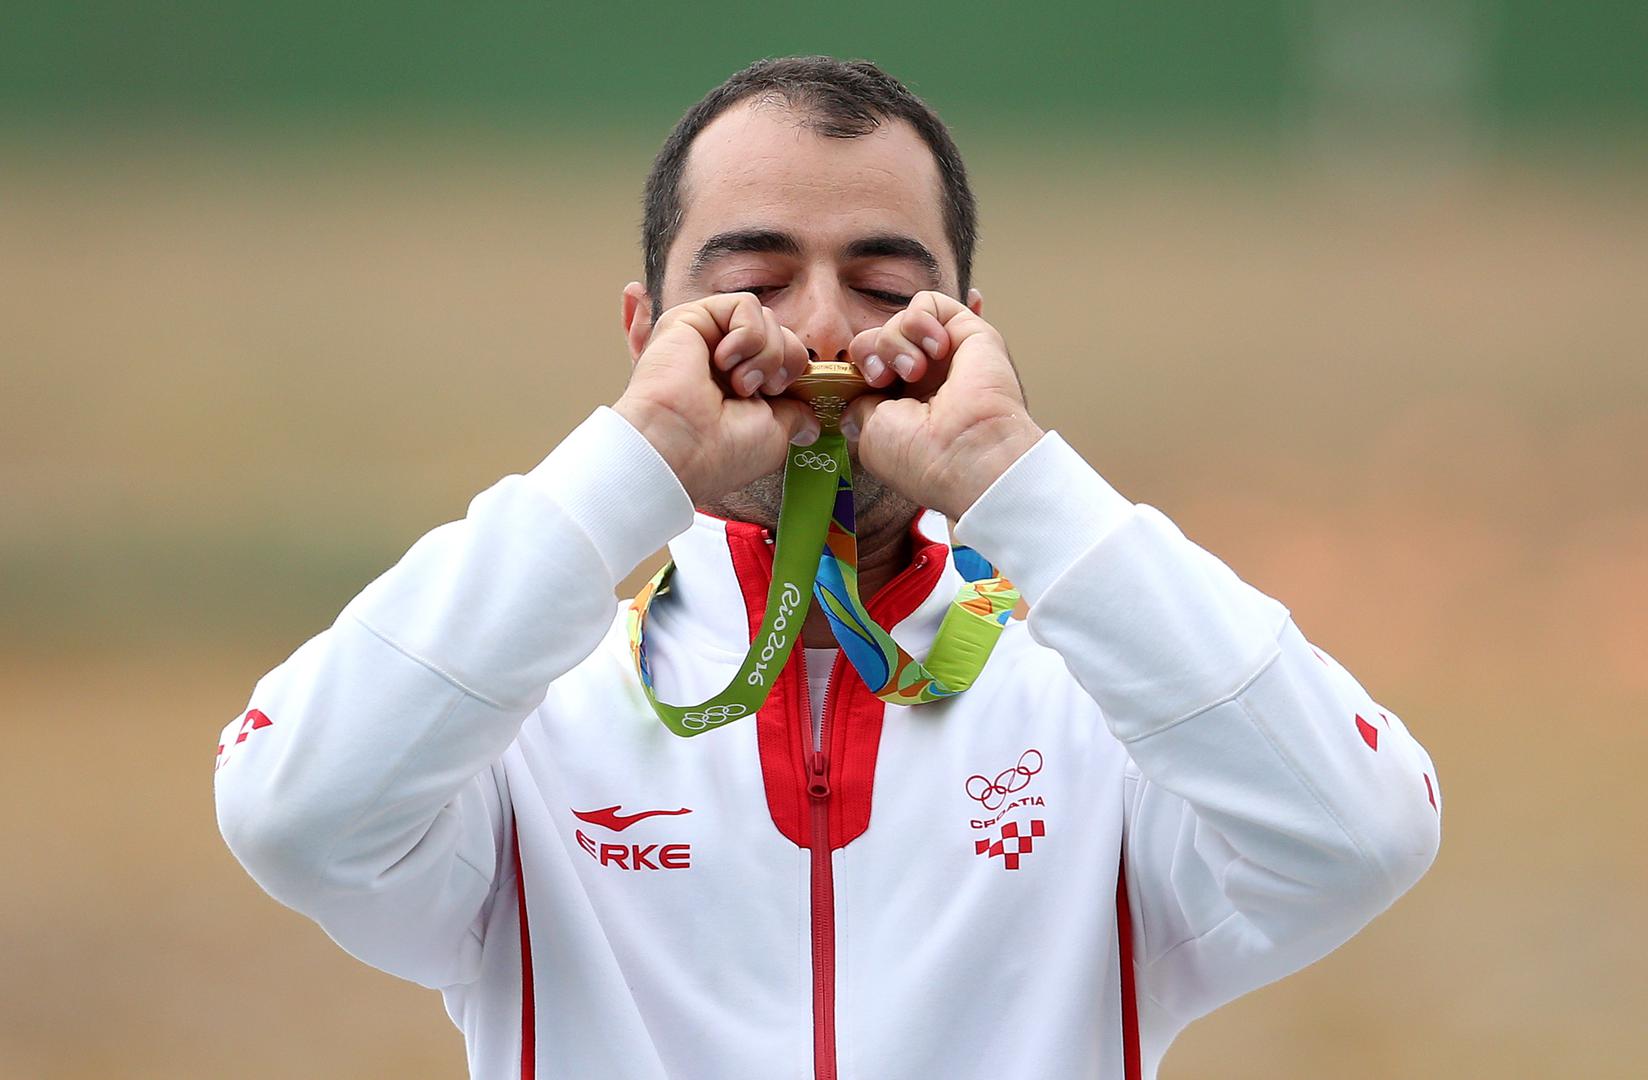 19. Prva hrvatska zlatna medalja na OI u Riju! Josip Glasnović, osvajač zlata u trapu na Olimpijskim igrama 2016.